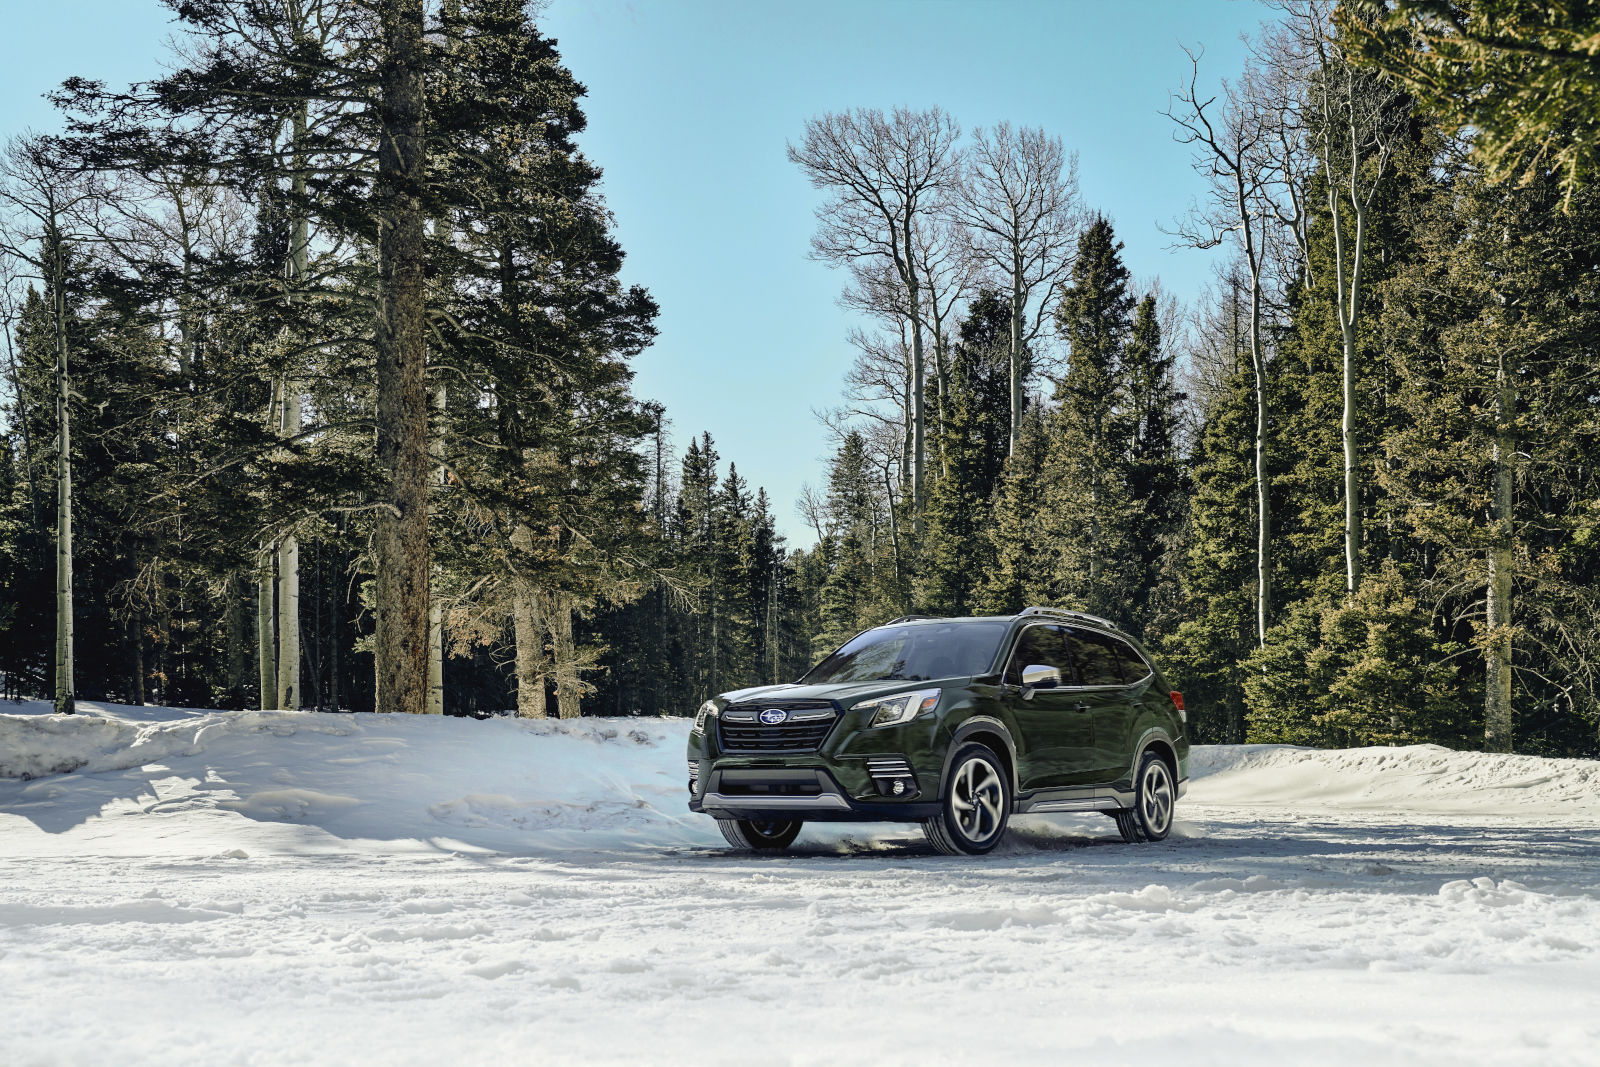 Pourquoi le système de traction intégrale symétrique de Subaru est-il si impressionnant en hiver ?